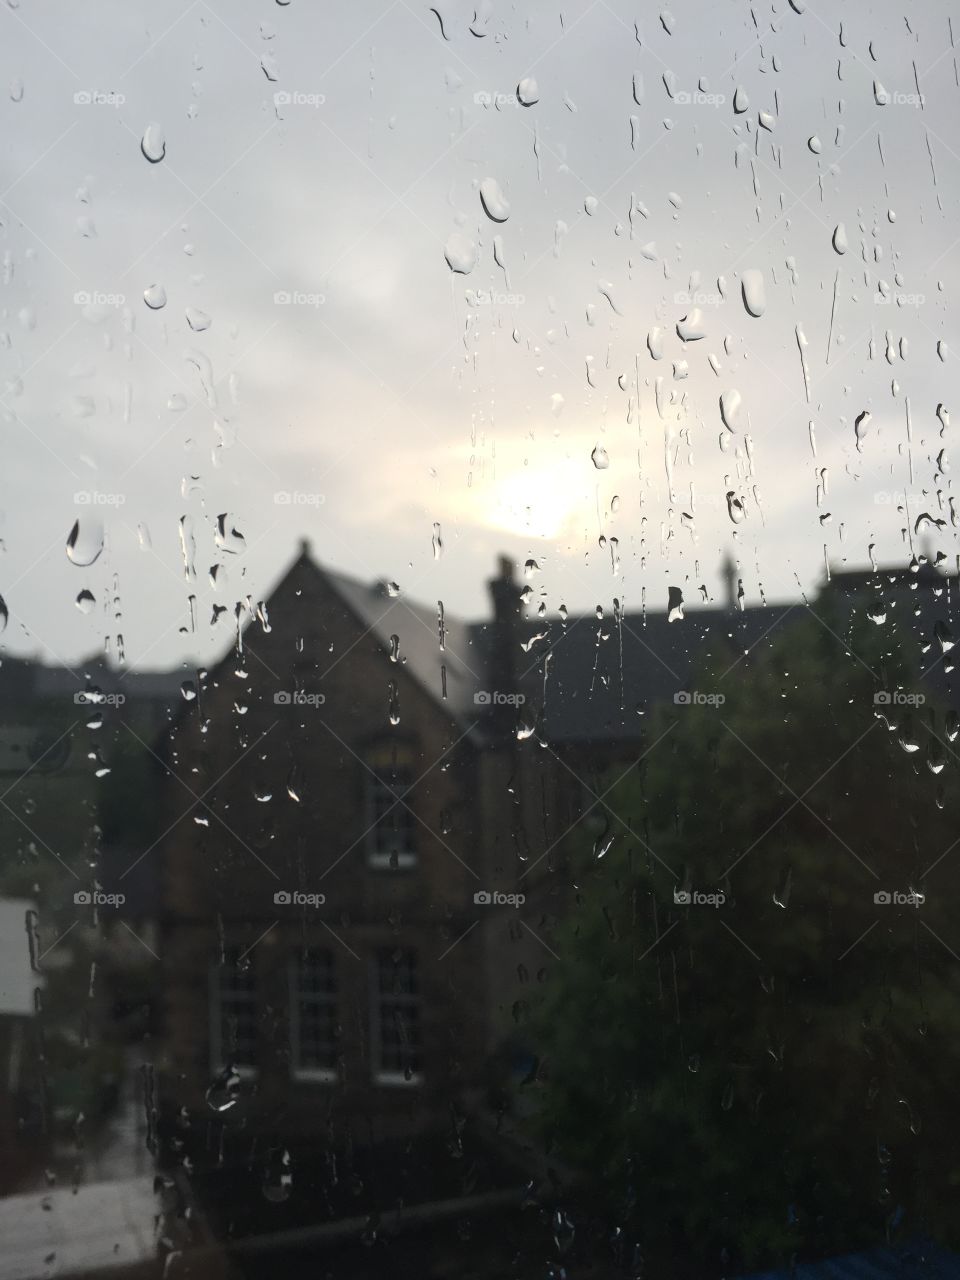 Rainy days in Scotland☔️